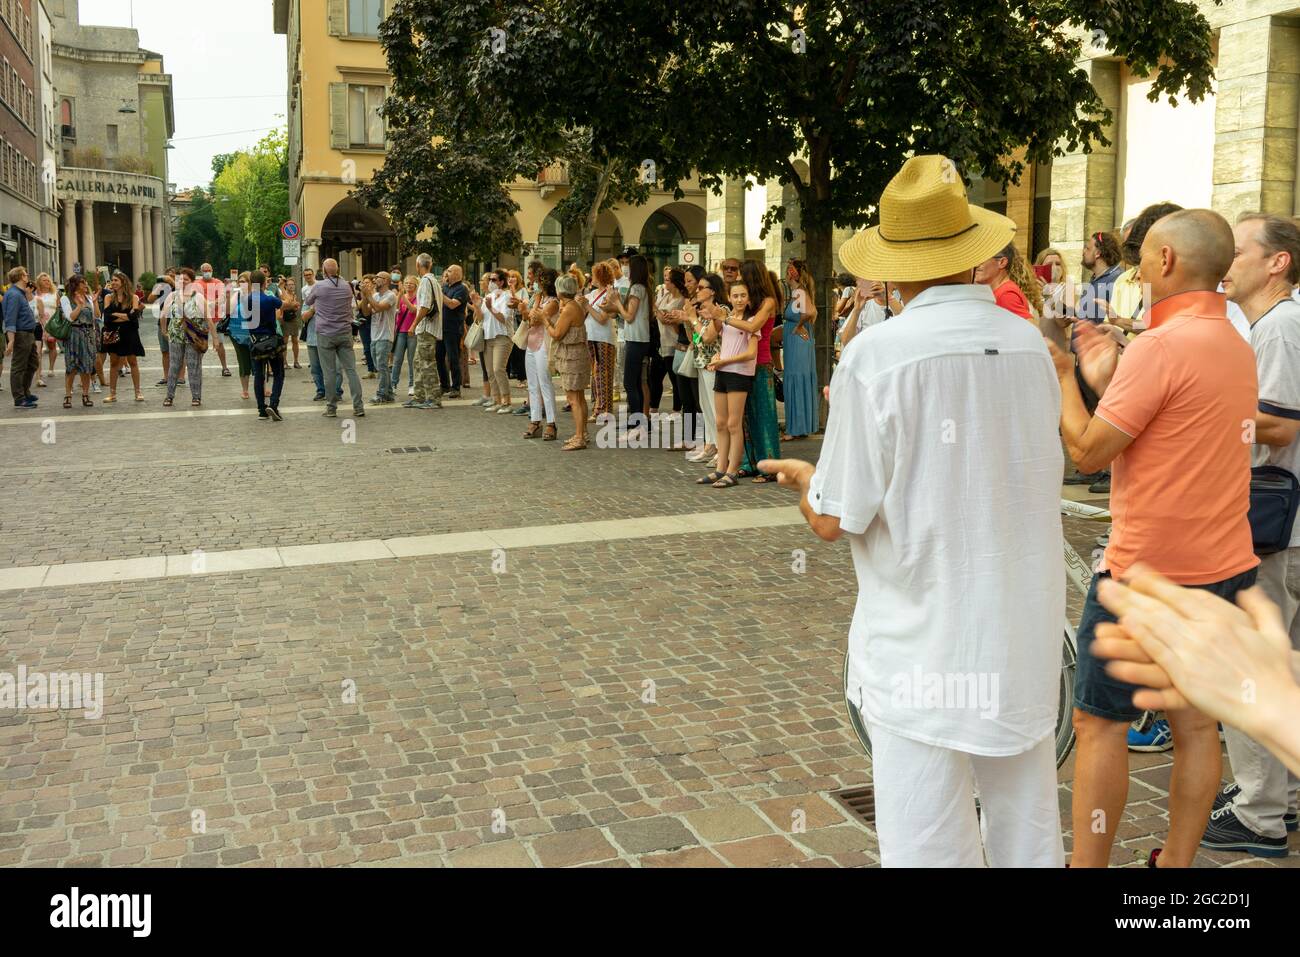 CREMONA, ITALIE - 24 juillet 2021 : une foule de personnes protestant contre la vaccination Covid-19 à Cremon, Italie Banque D'Images